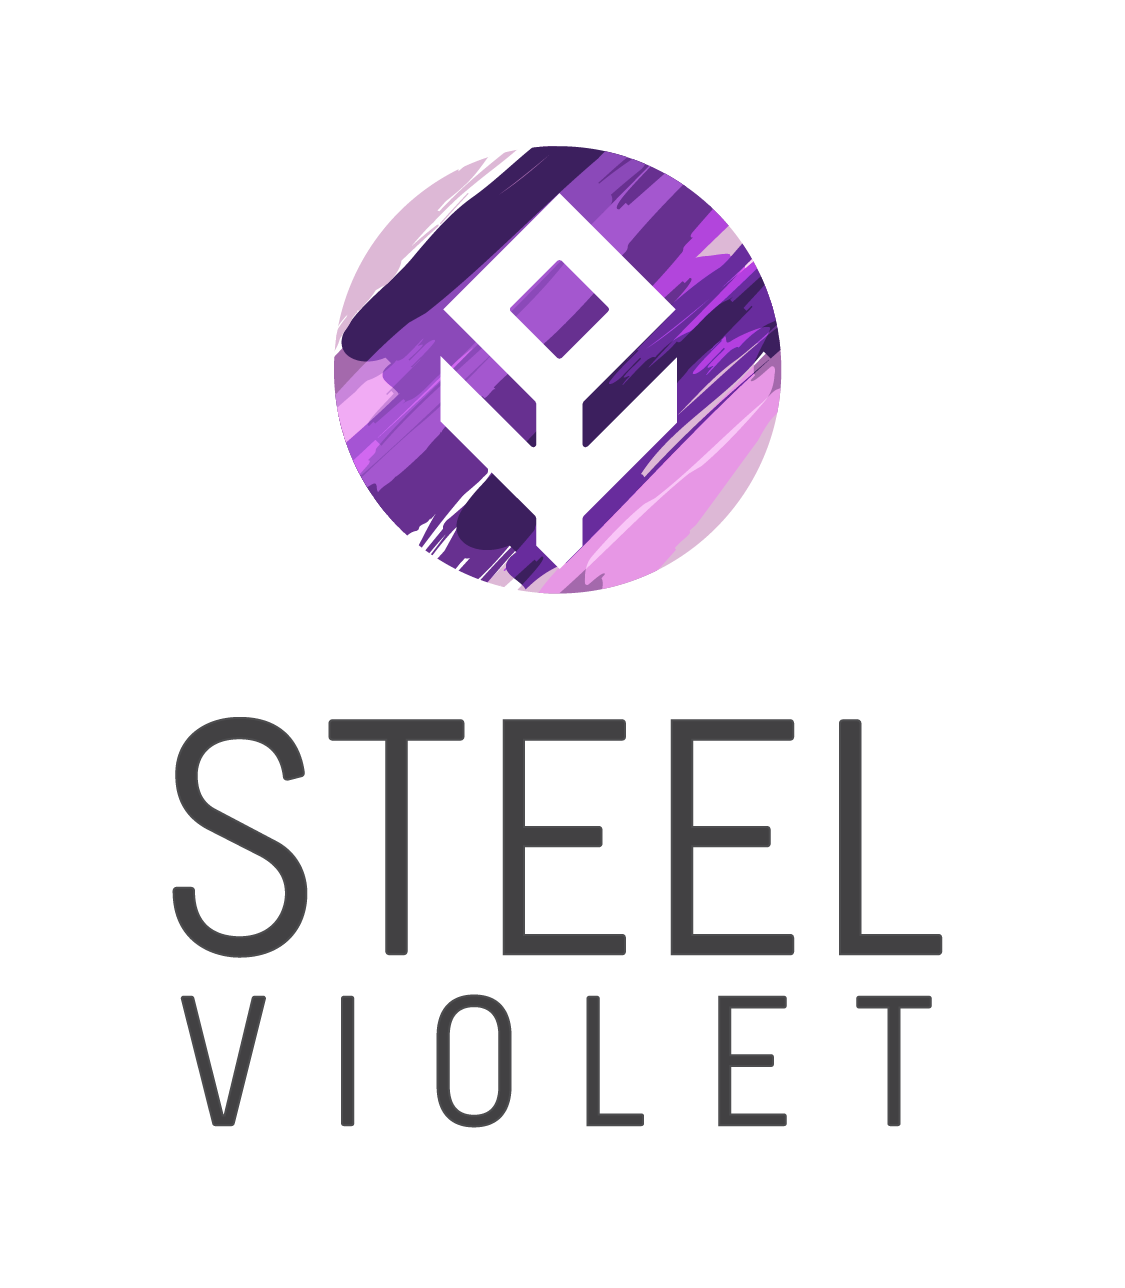 Steel Violet Toilet Paper supplier Cape Town